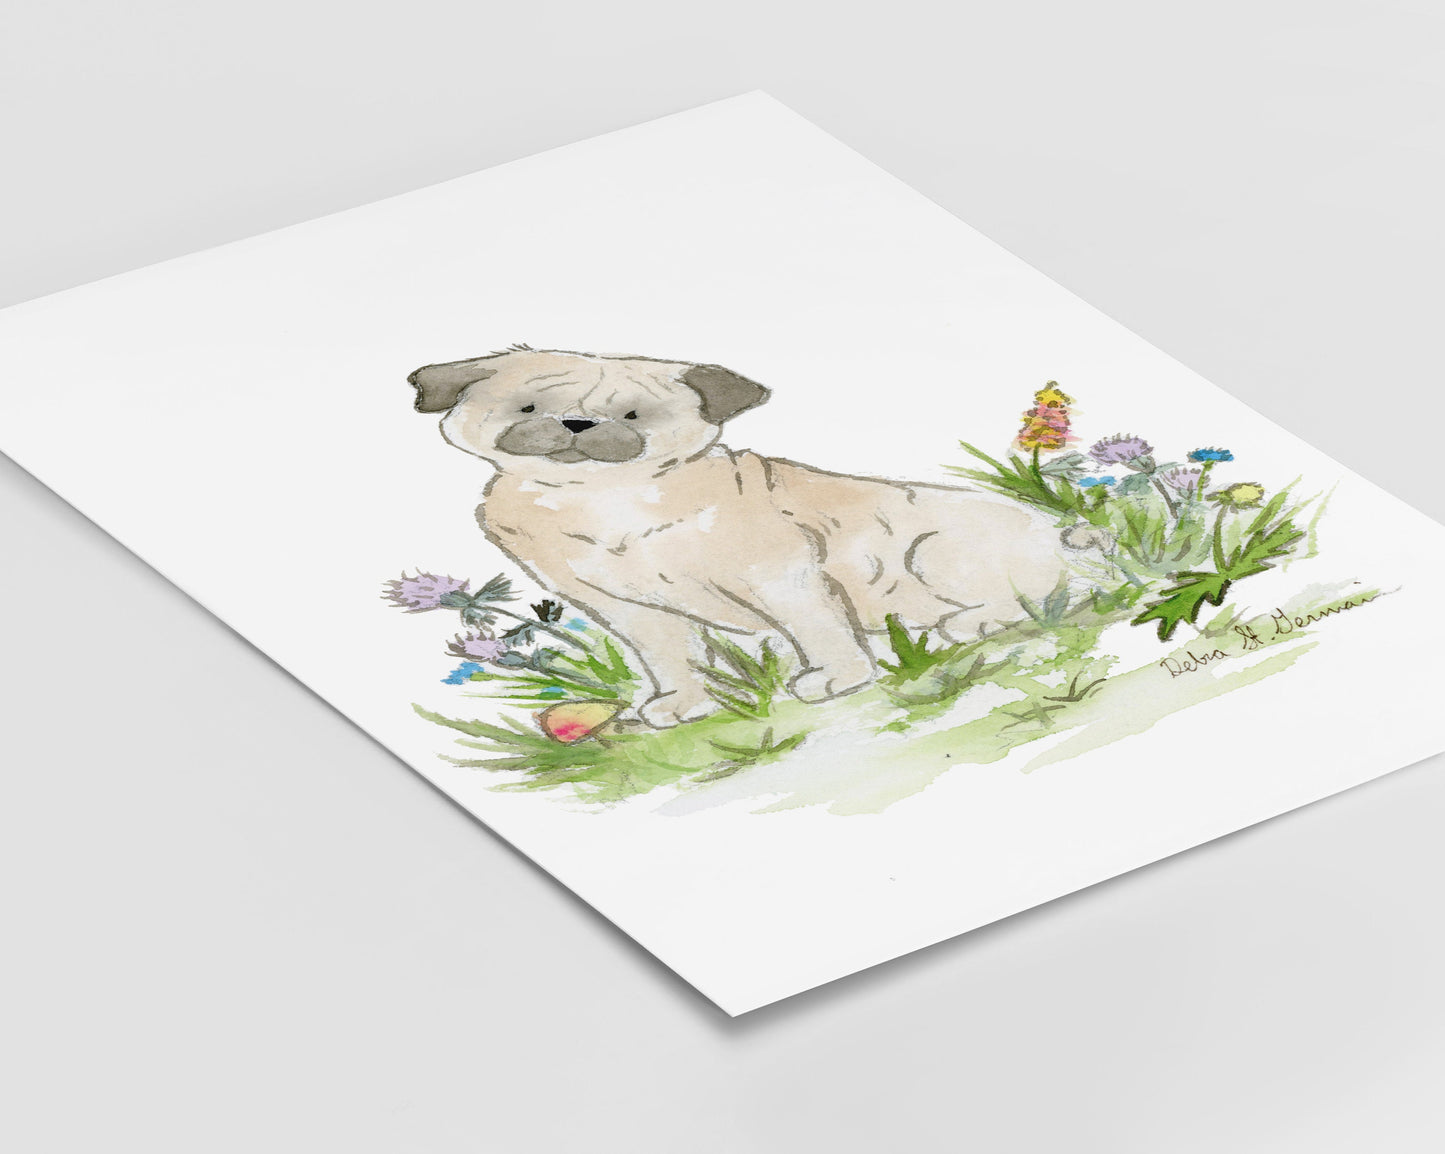 Pug Art Print, Pug Watercolor Print, Gift for Pug Lovers